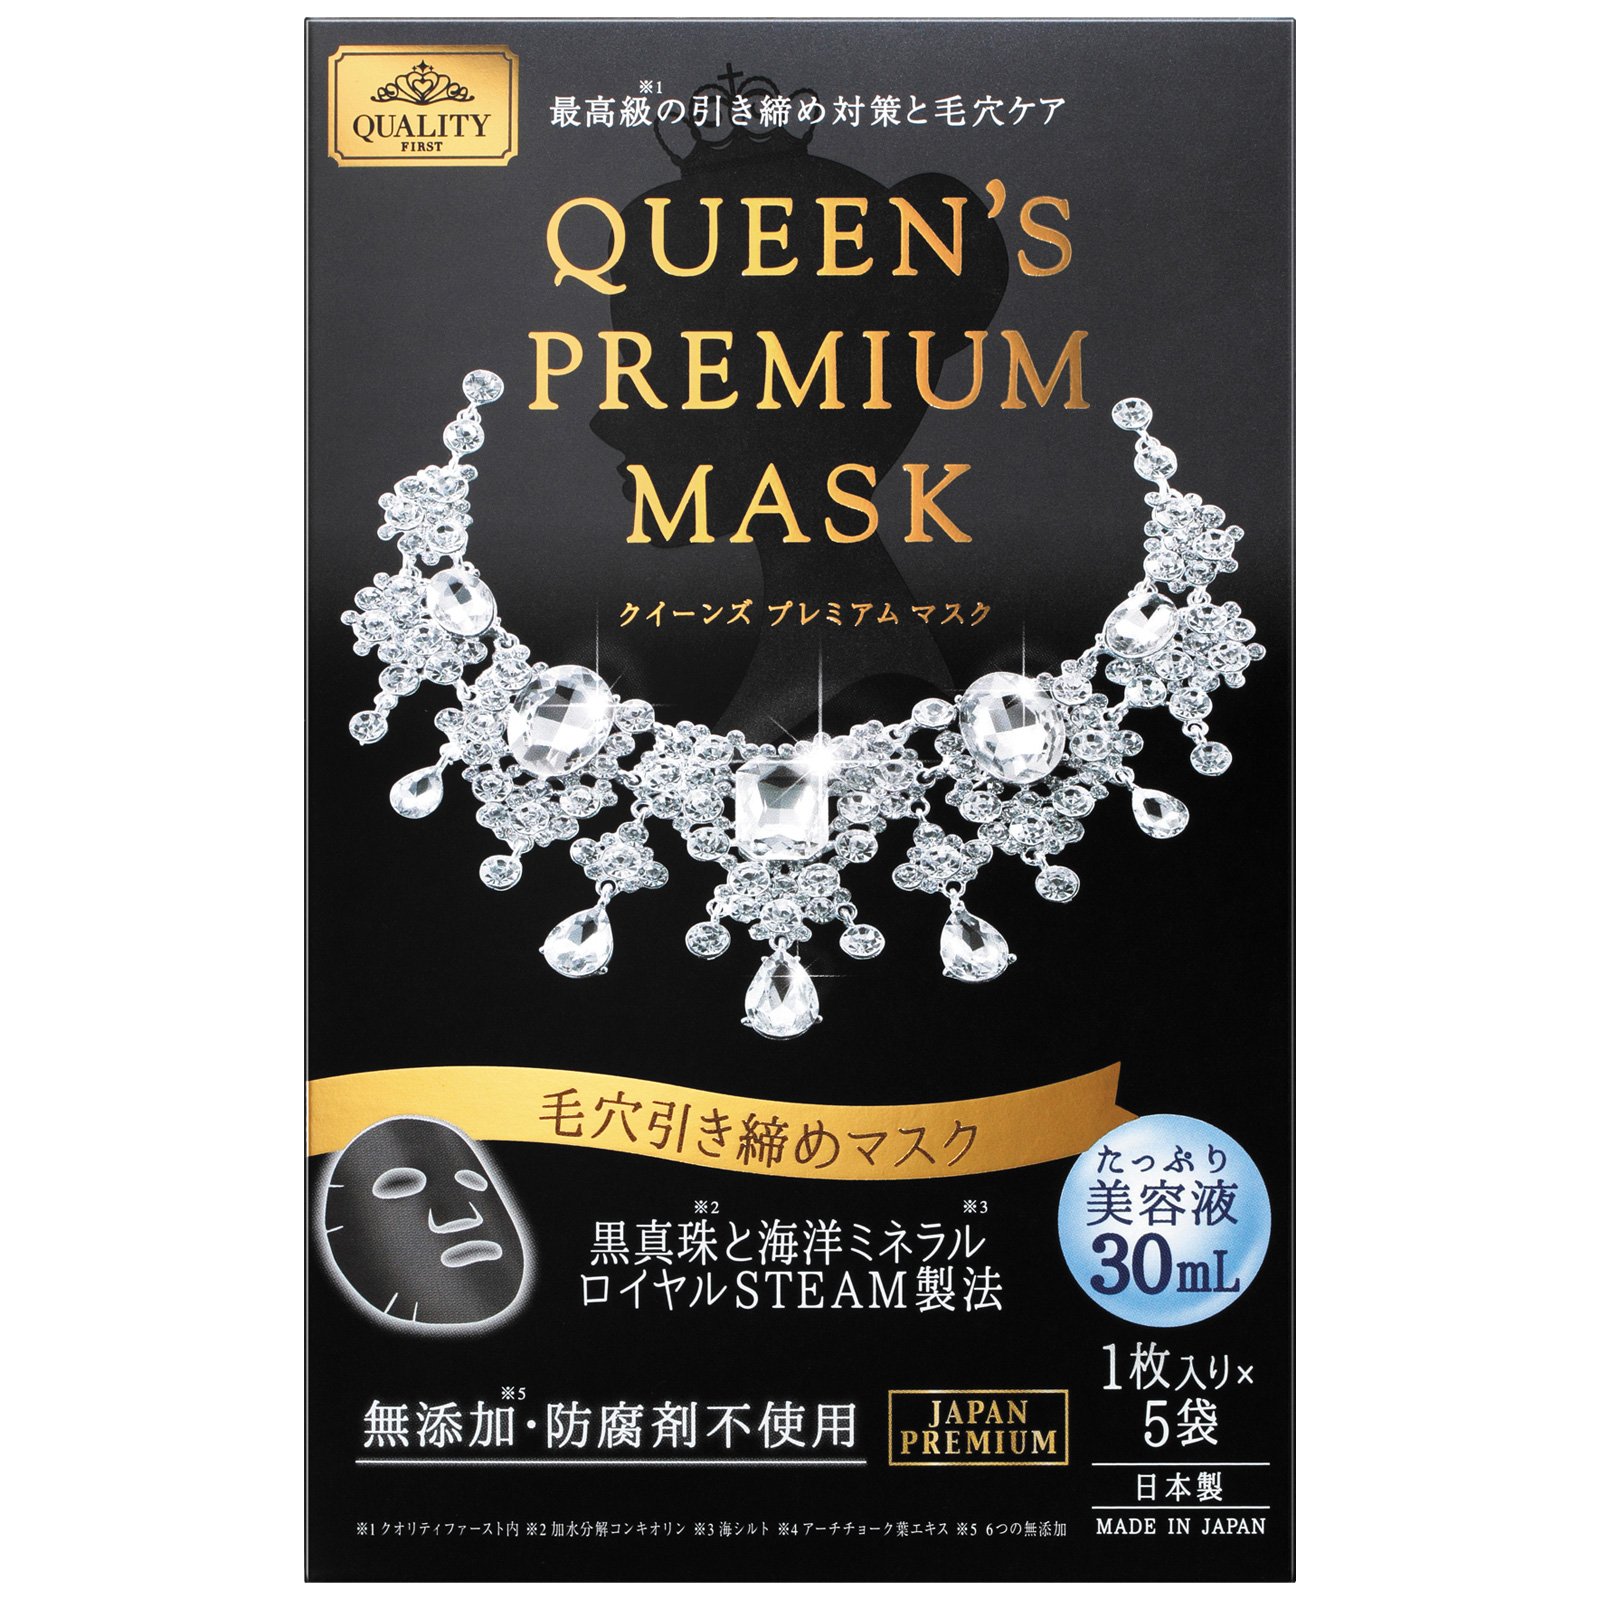 Quality First Queen’s Premium Mask. Тканевая лифтинг-маска для лица Кволити Фест «Королева Блэк» на основе черного жемчуга и морских минералов, сужающая поры, 5 шт.